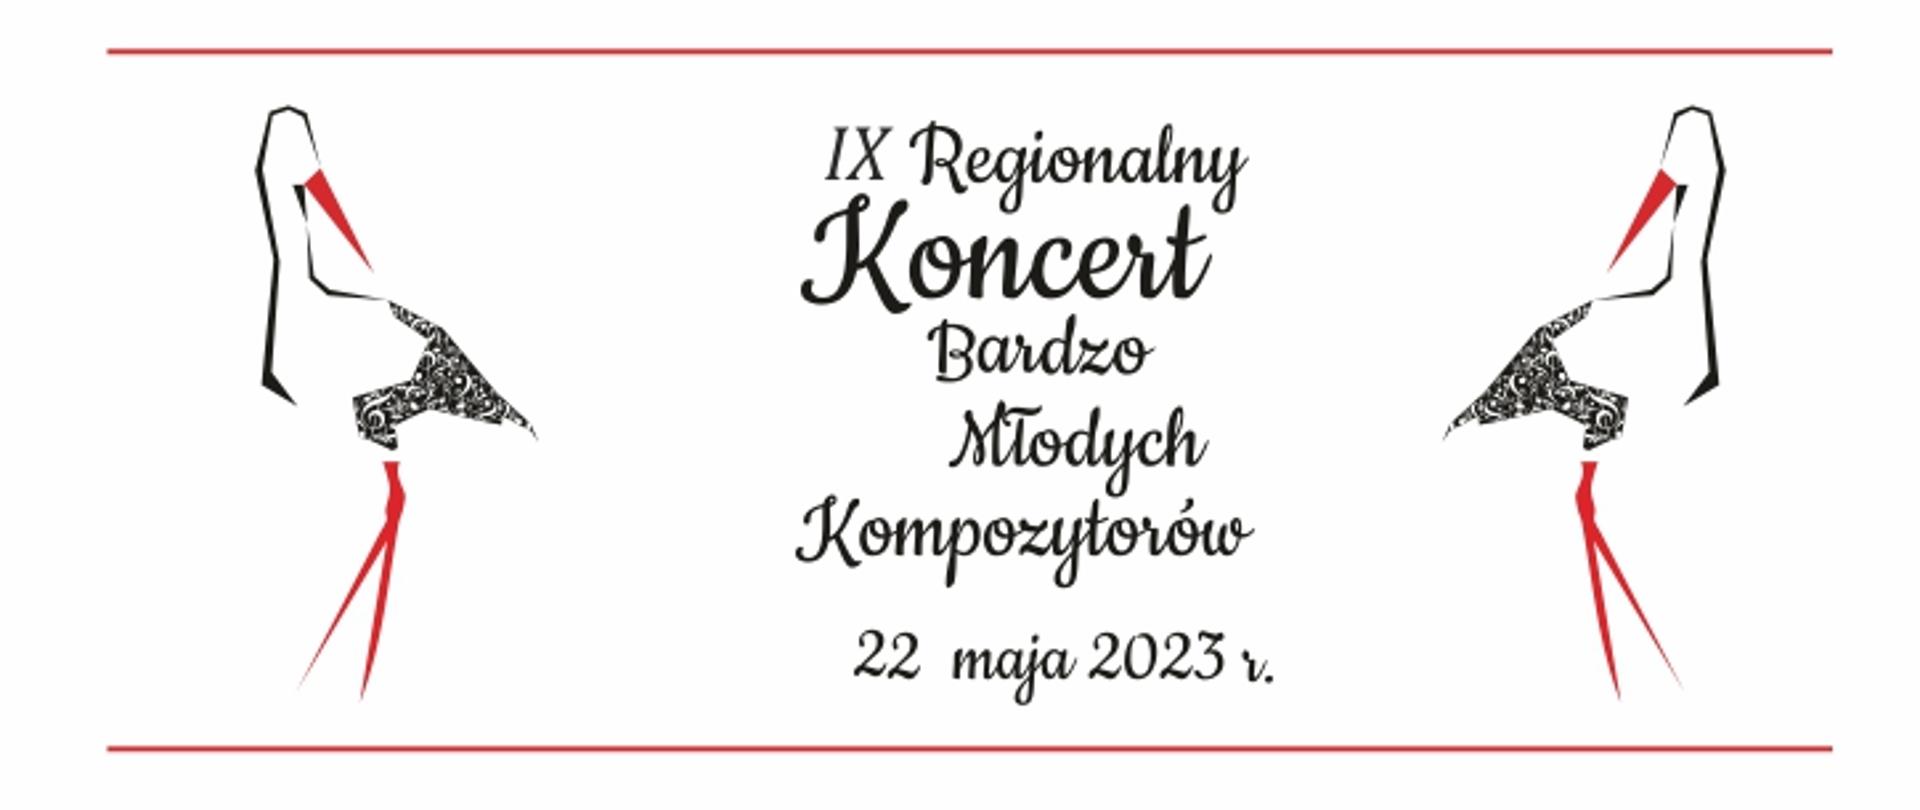 Baner na białym tle informujący o IX Regionalnym Koncercie Bardzo Młodych Kompozytorów, który odbędzie się 22 maja 2023 roku w szkole muzycznej w Głubczycach. Z lewej i prawej strony grafika przedstawiająca bociana - logo koncertu.